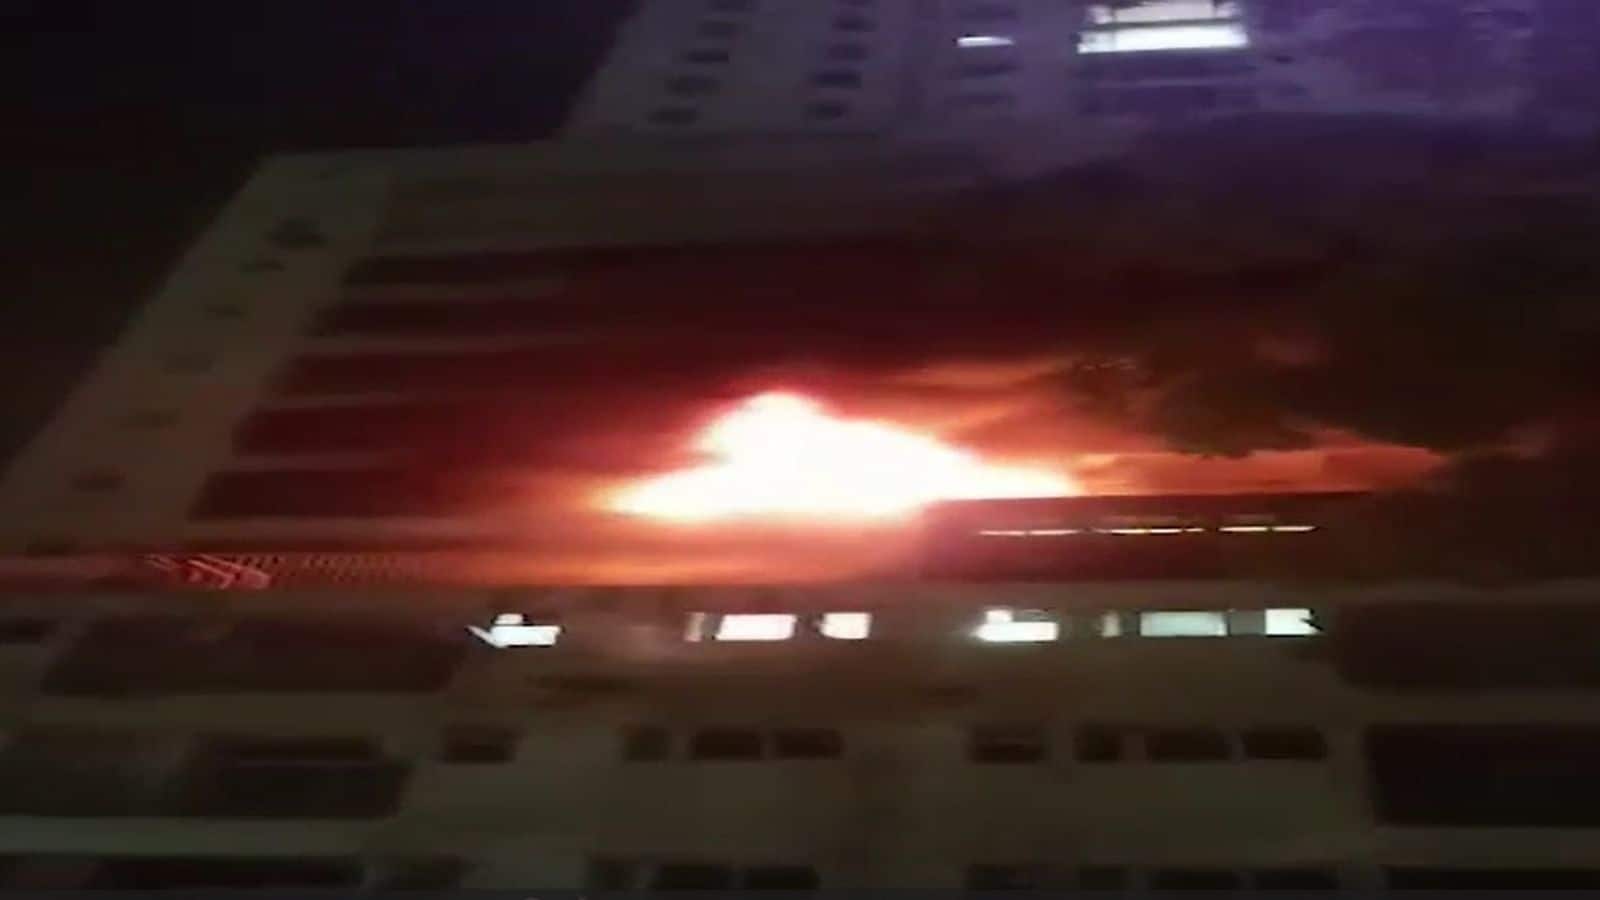 Fire breaks out in Ghaziabad flat after AC blast